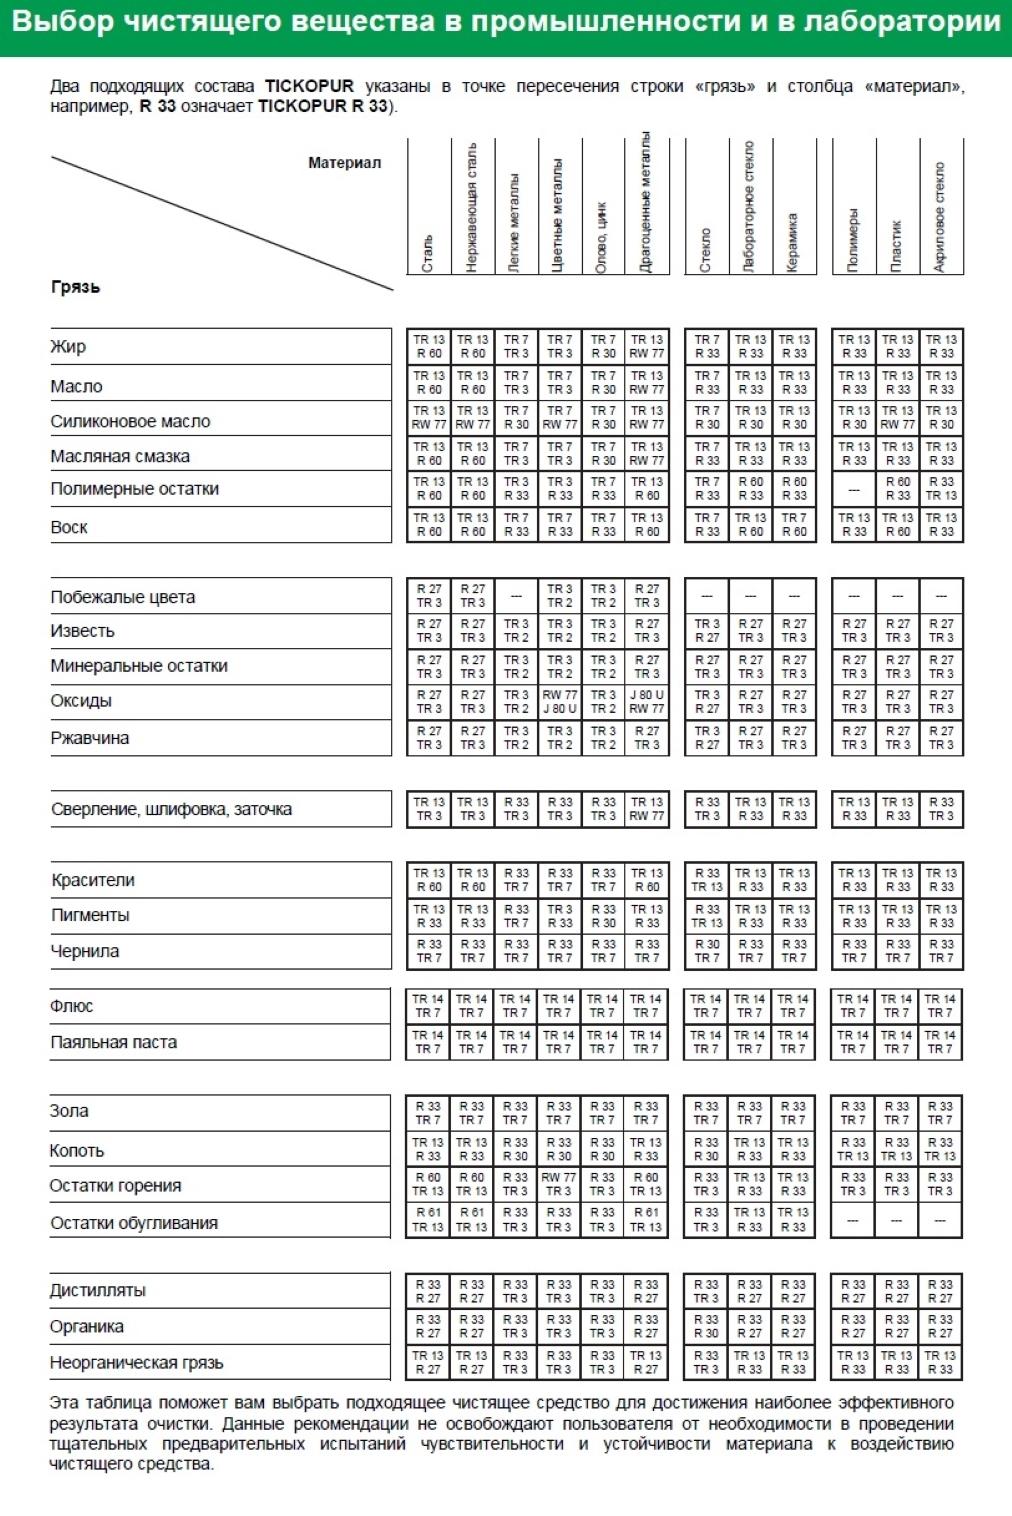 Таблица выбора чистящего вещества TR 14 TICKOPUR